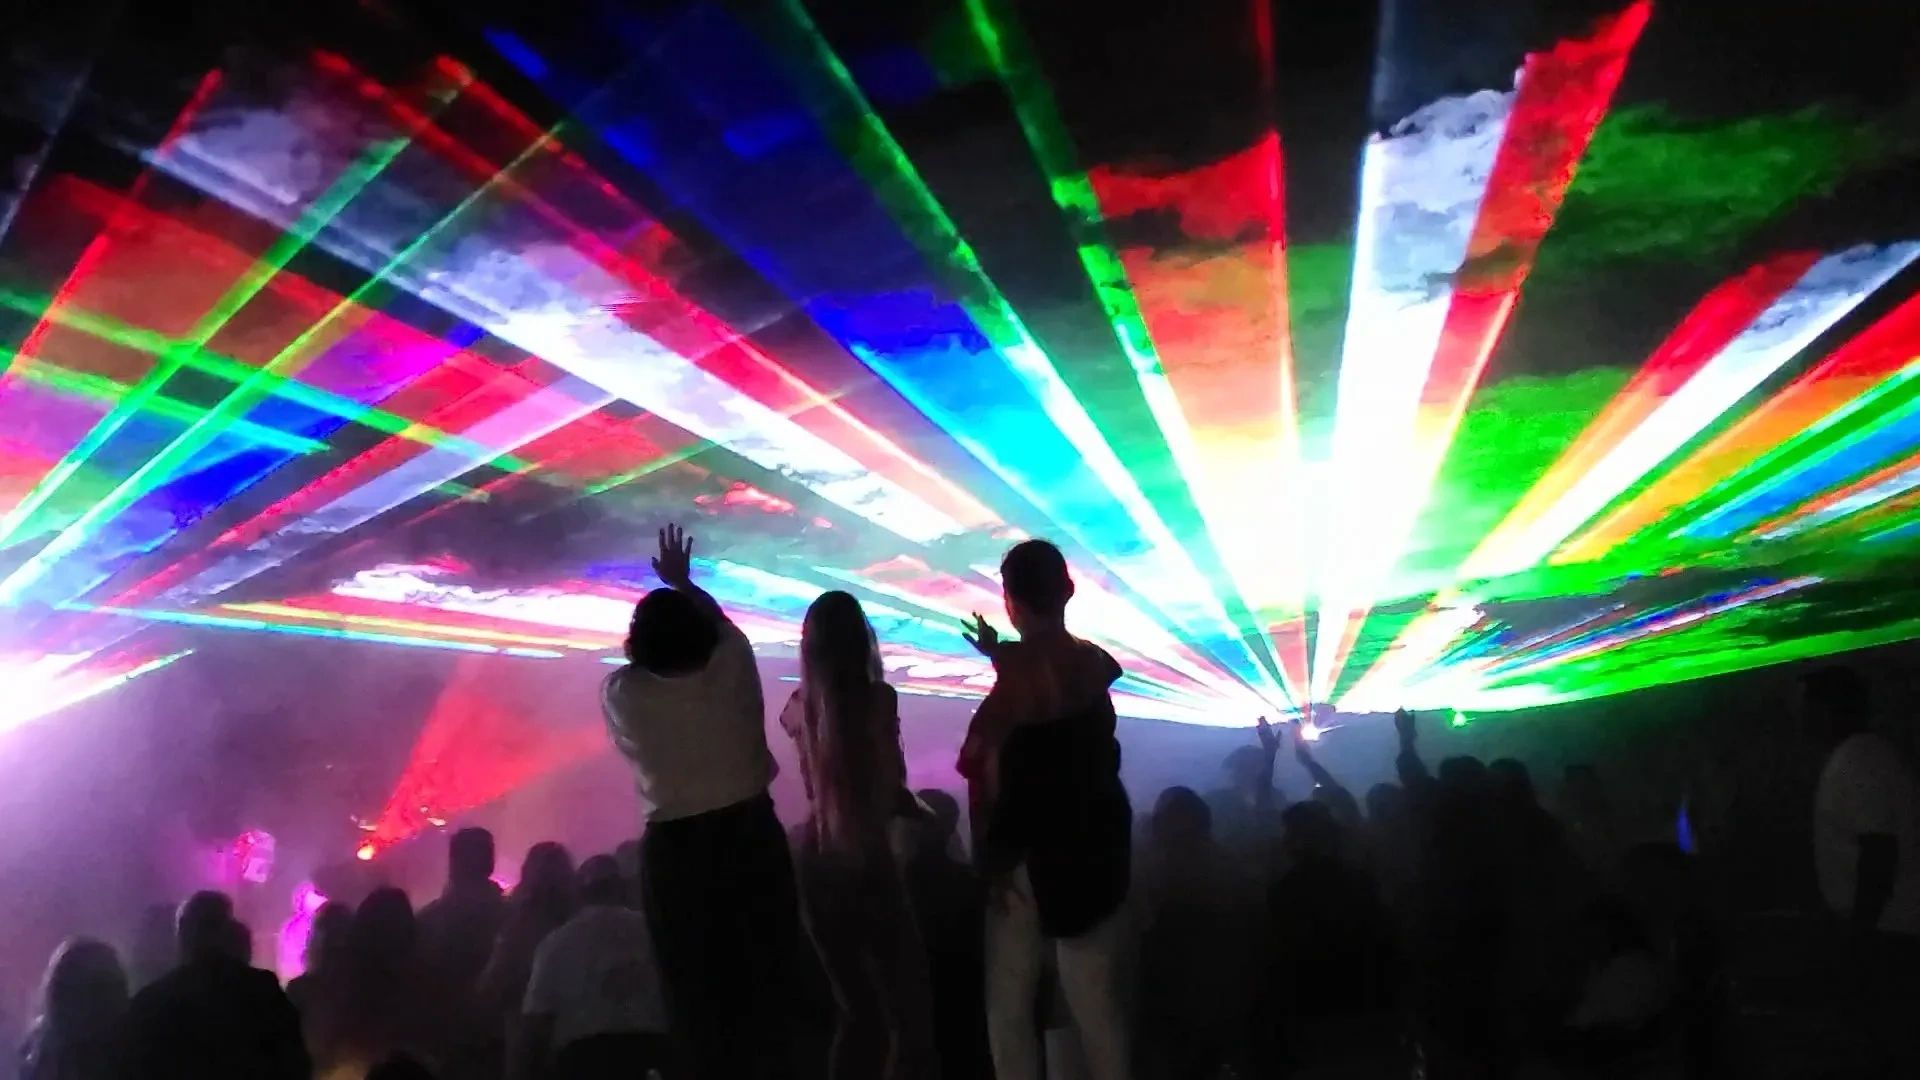 Laser party on ice : light show laser, laser game sur glace, DJ la soirée  sur glace à ne pas rater